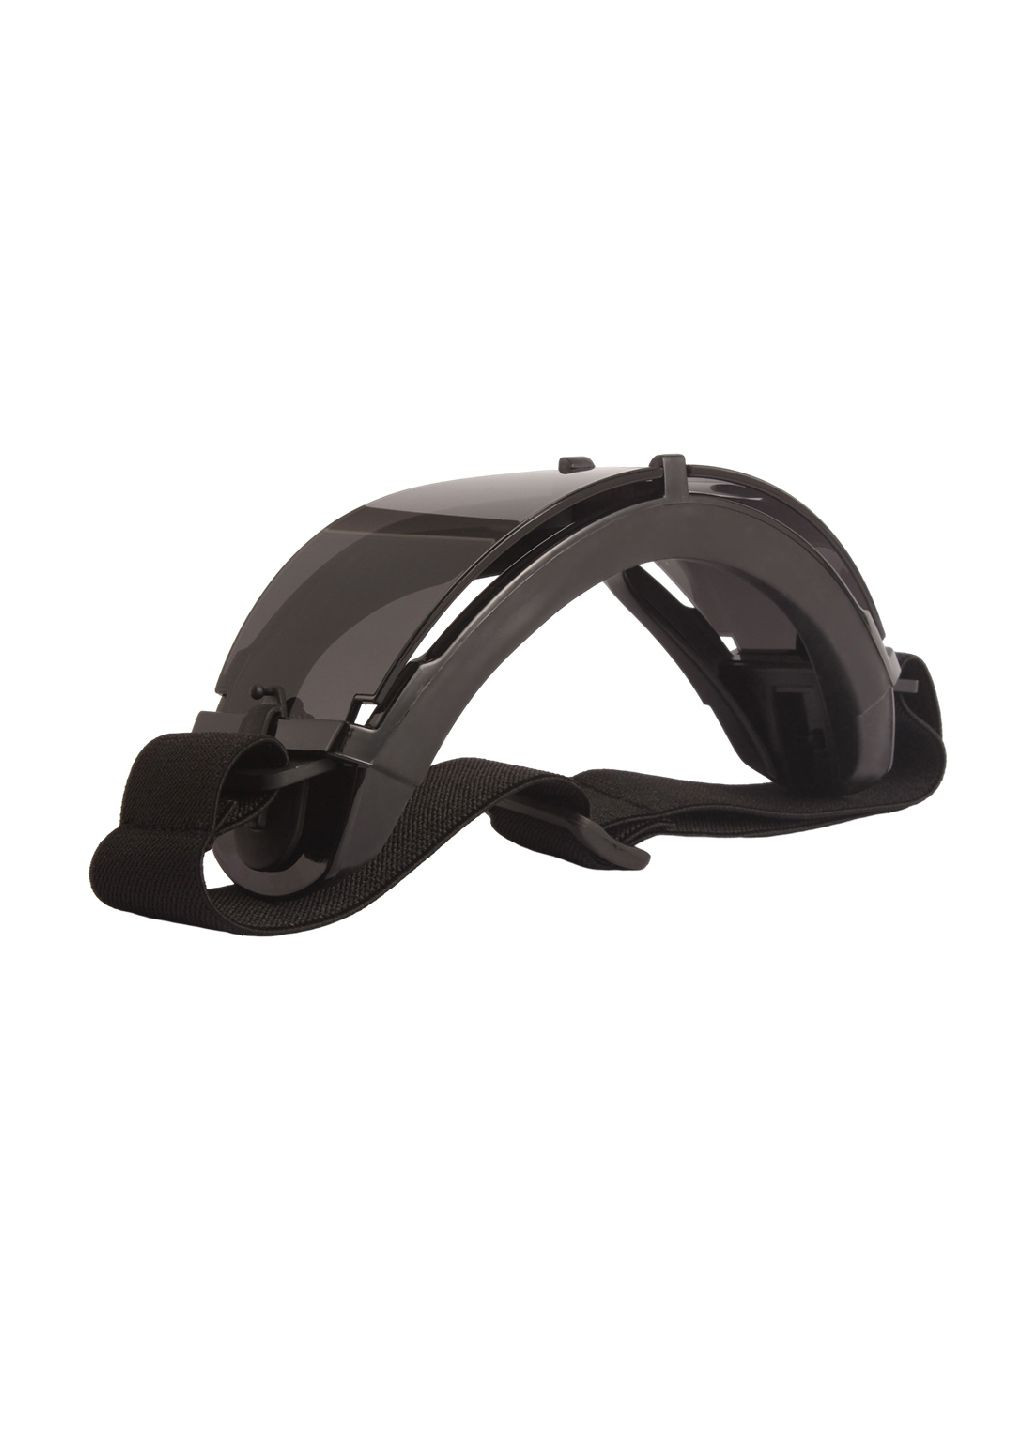 Тактические защитные очки, маска со сменными линзами - Панорамные незапотевающие. Daisy (280826703)